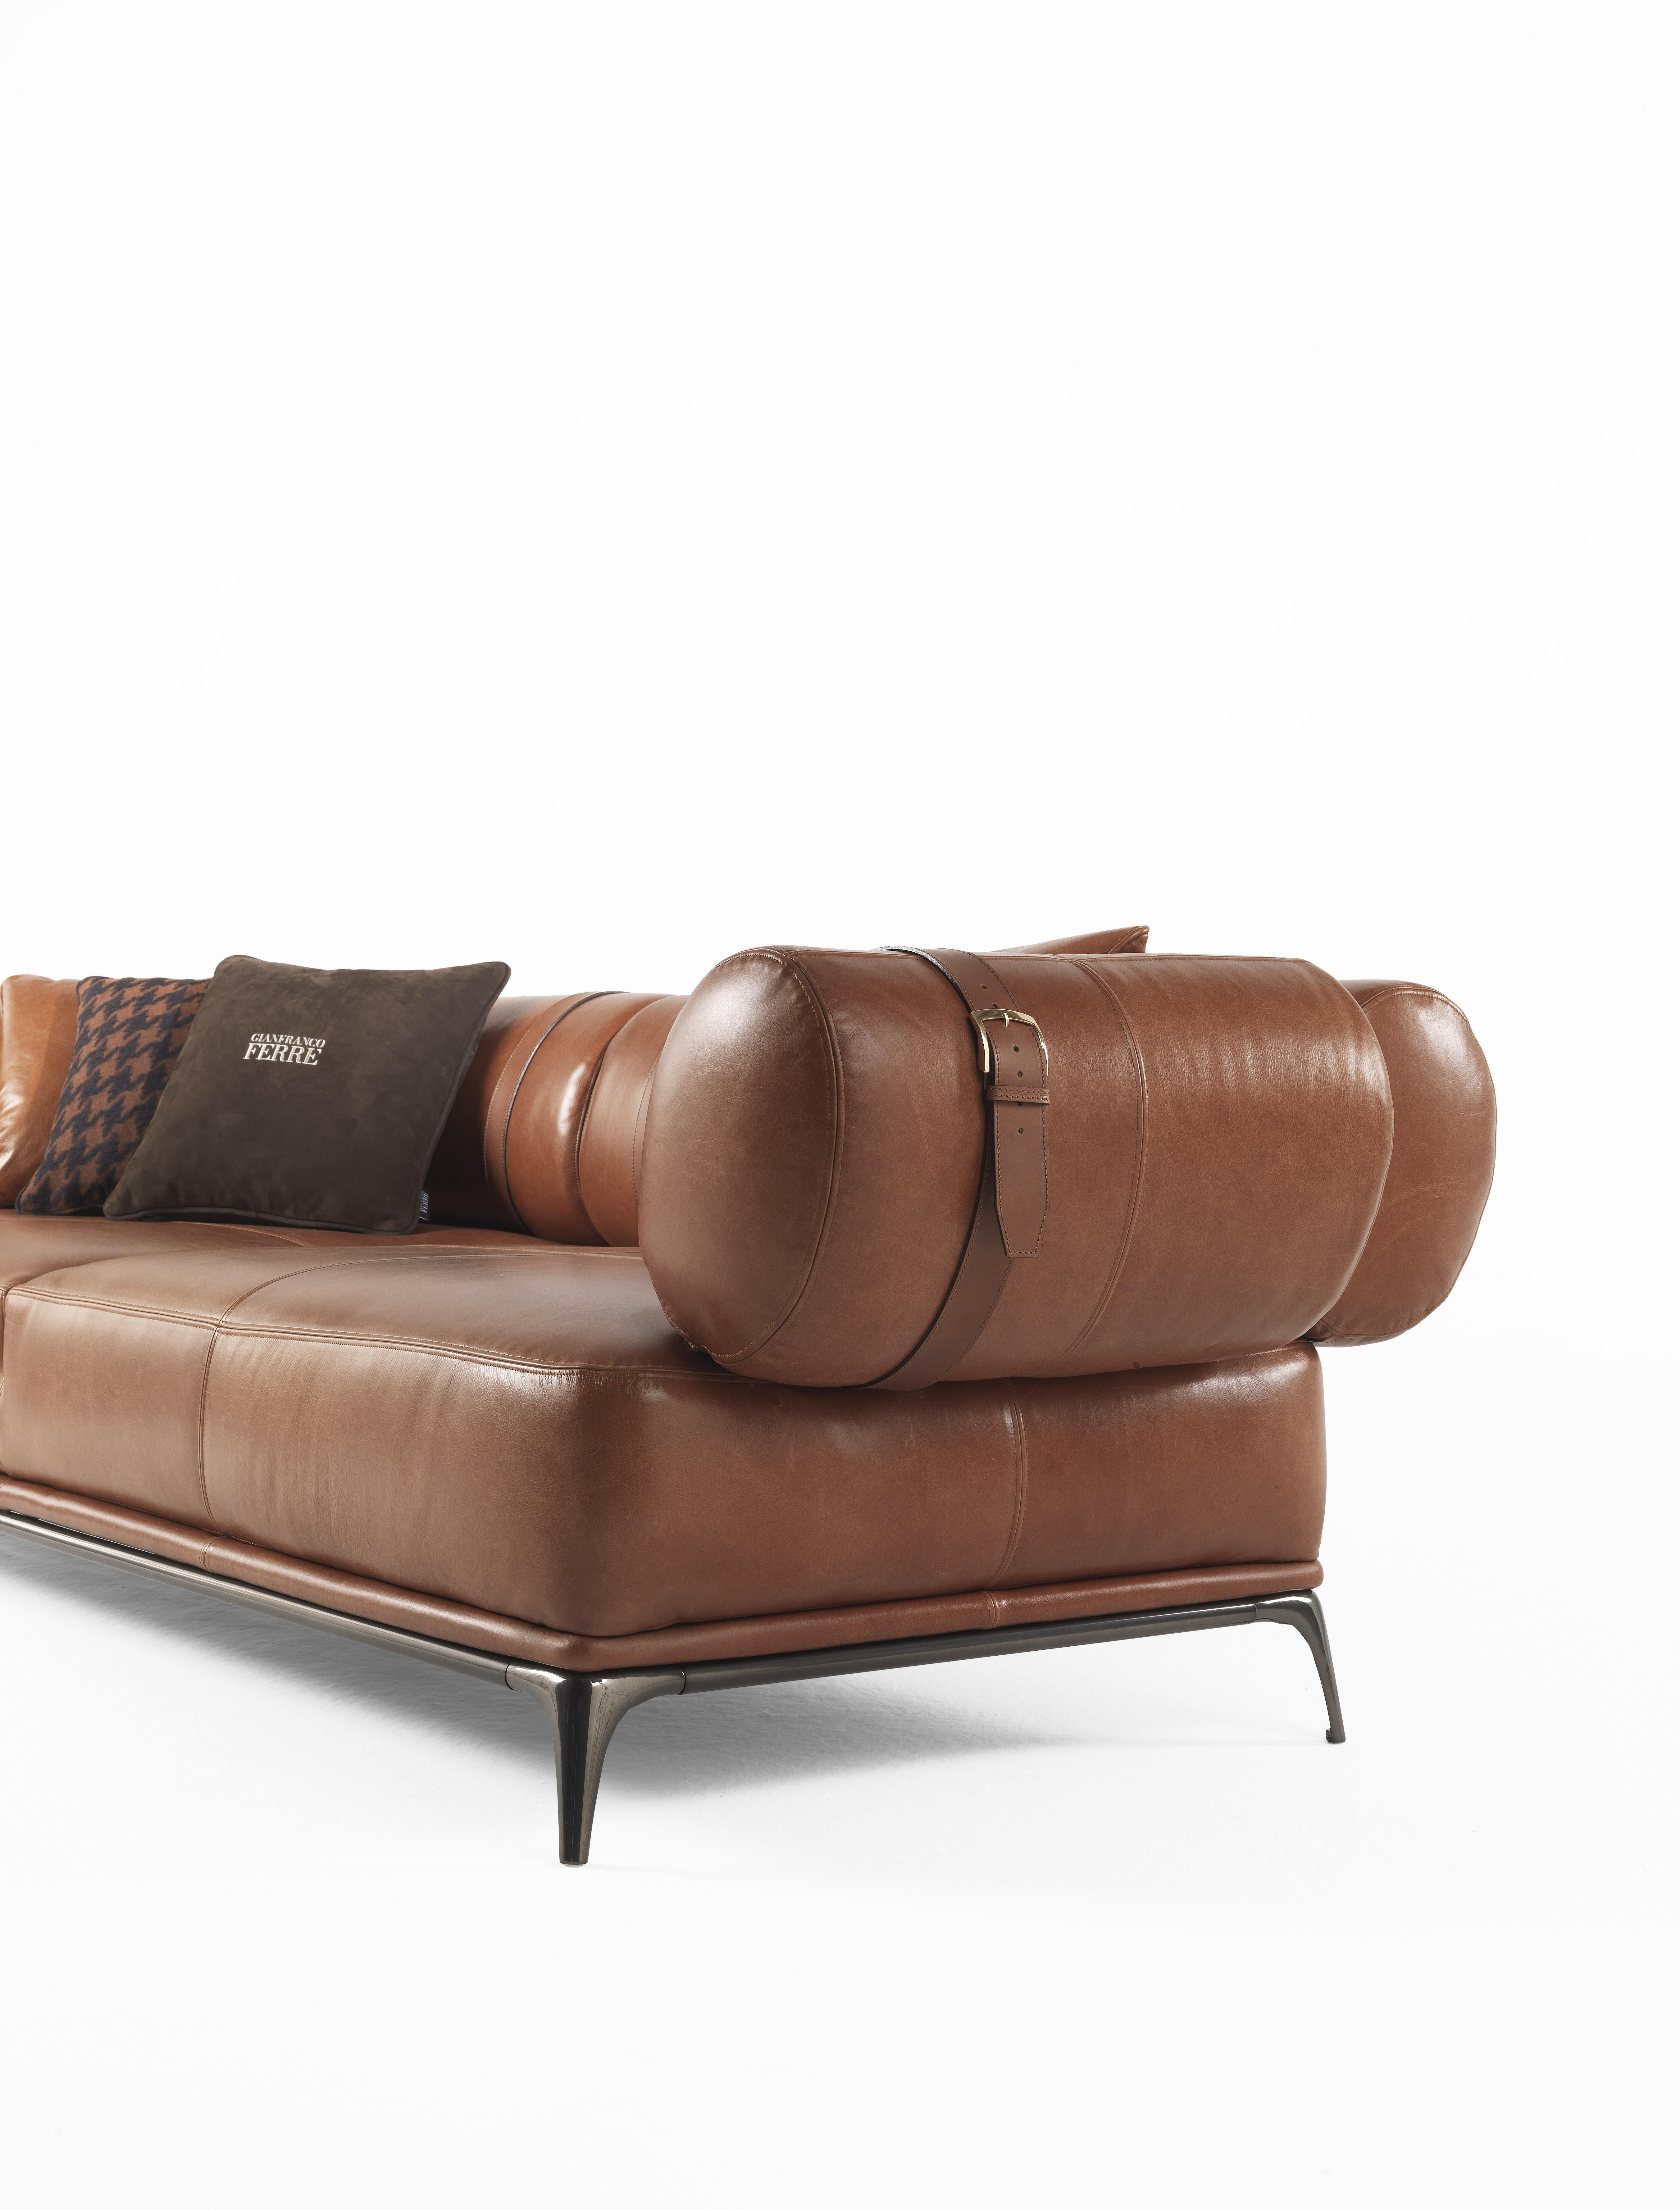 leather sofa phoenix